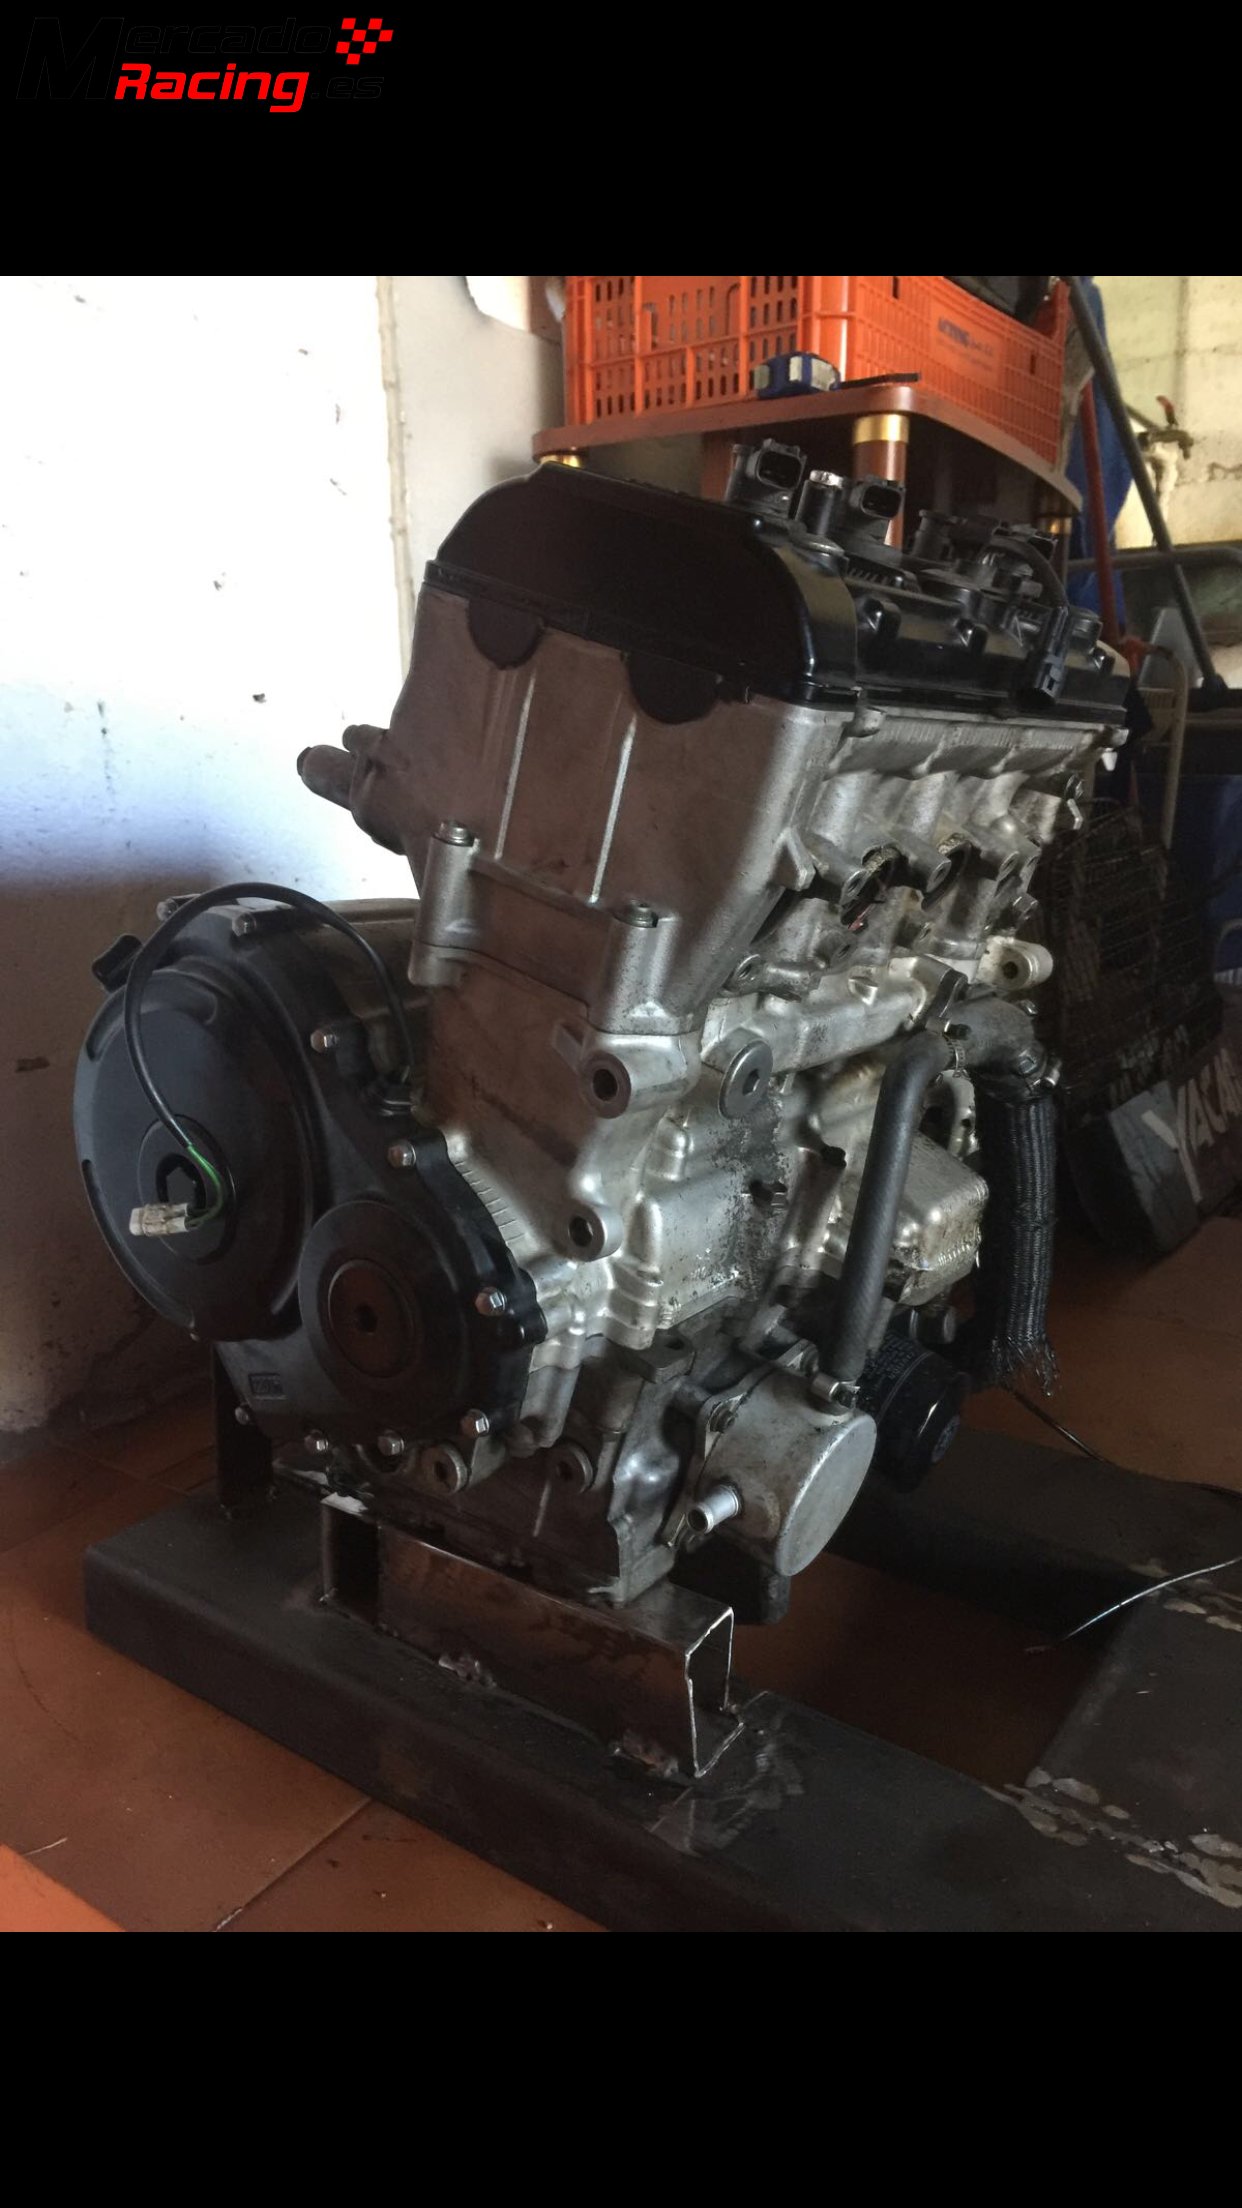 Despiece motor gsxr 600 k7